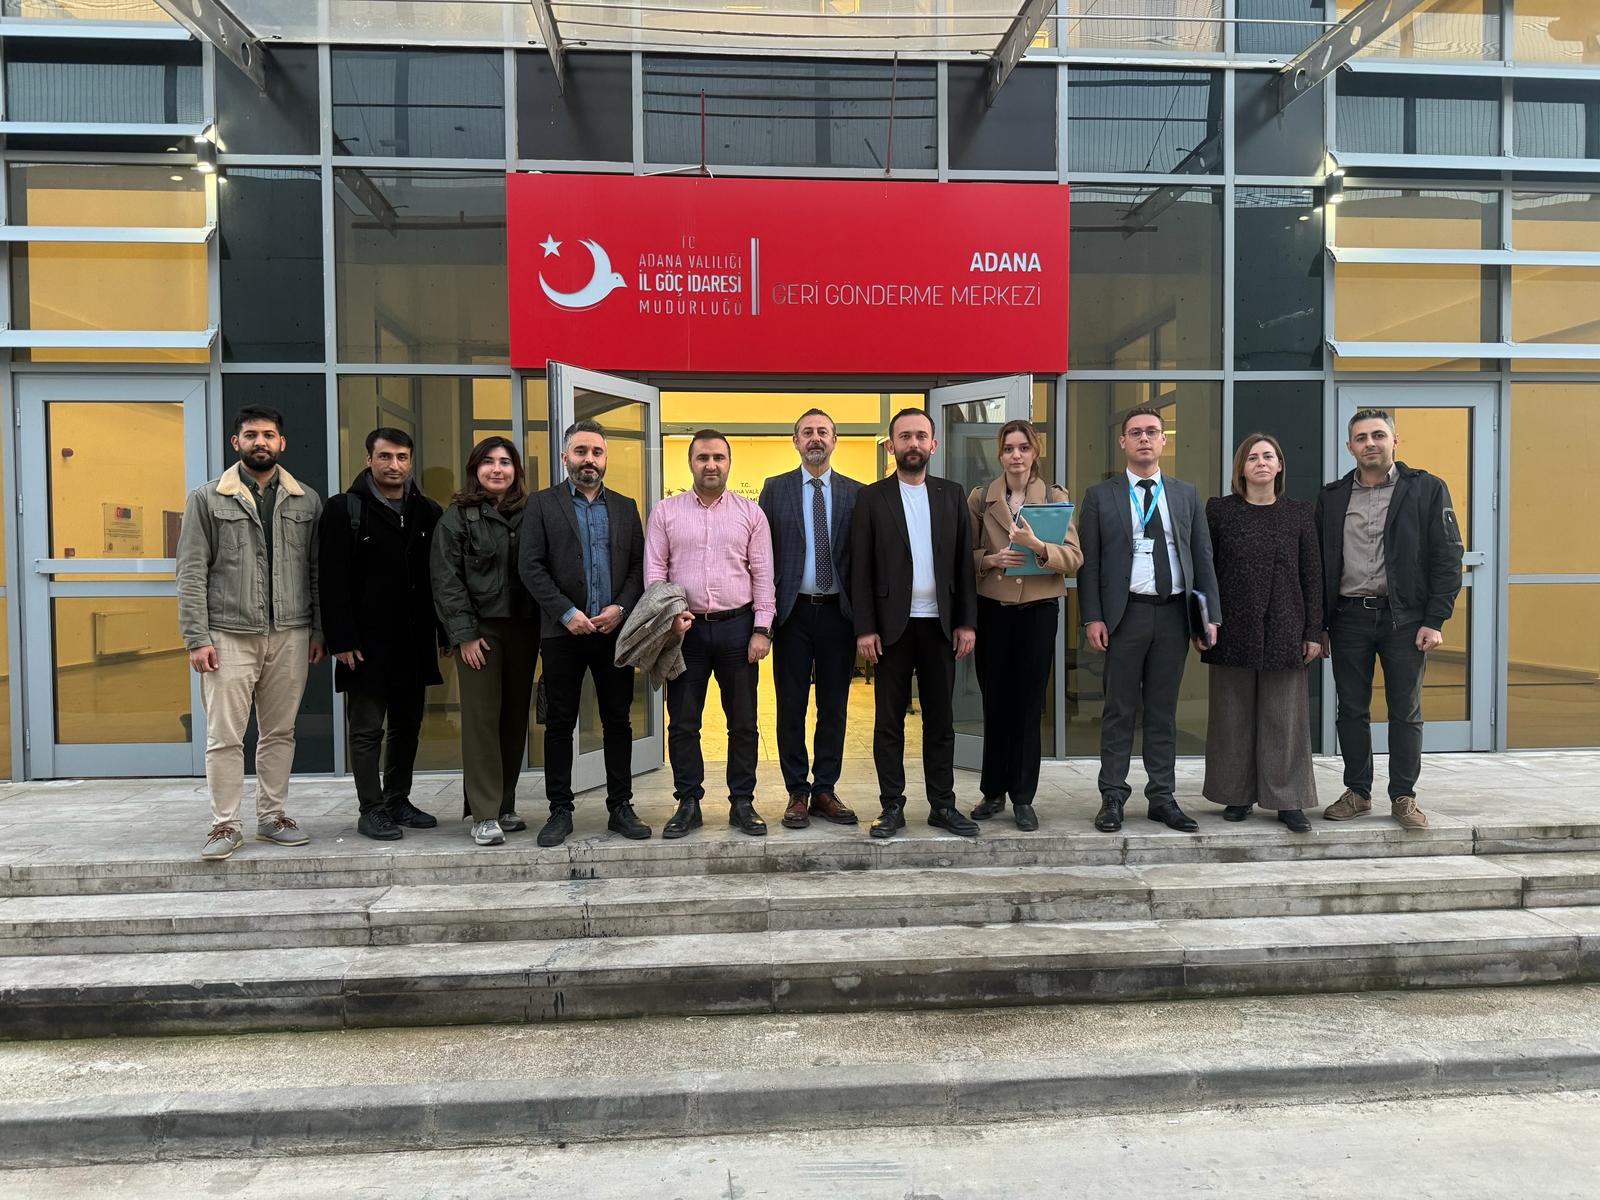 TİHEK Heyeti, Adana Geri Gönderme Merkezine Habersiz Bir Ziyaret Gerçekleştirdi